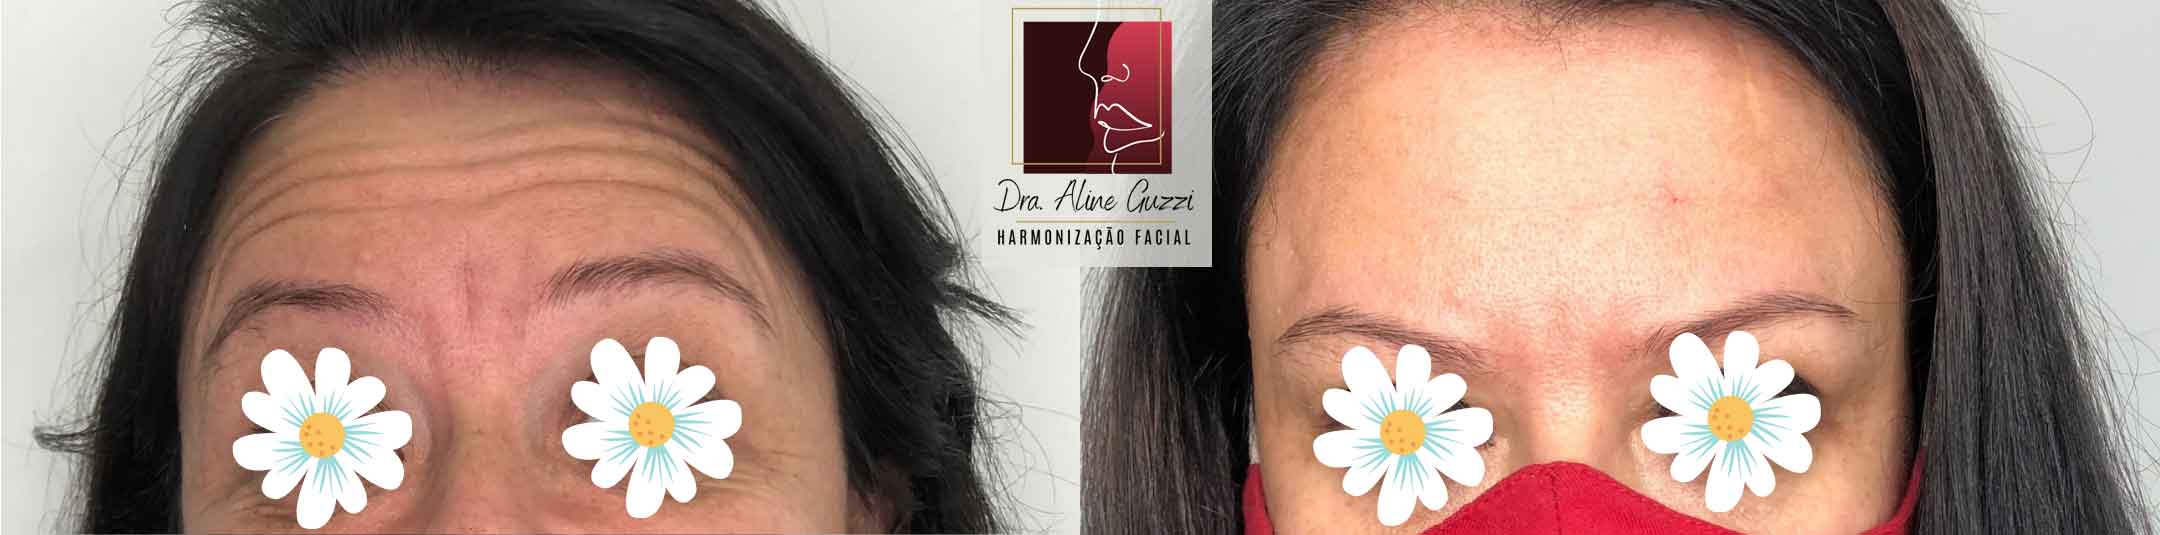 Harmonização Facial - Dra. Aline Guzzi: Caso Clínico de Botox